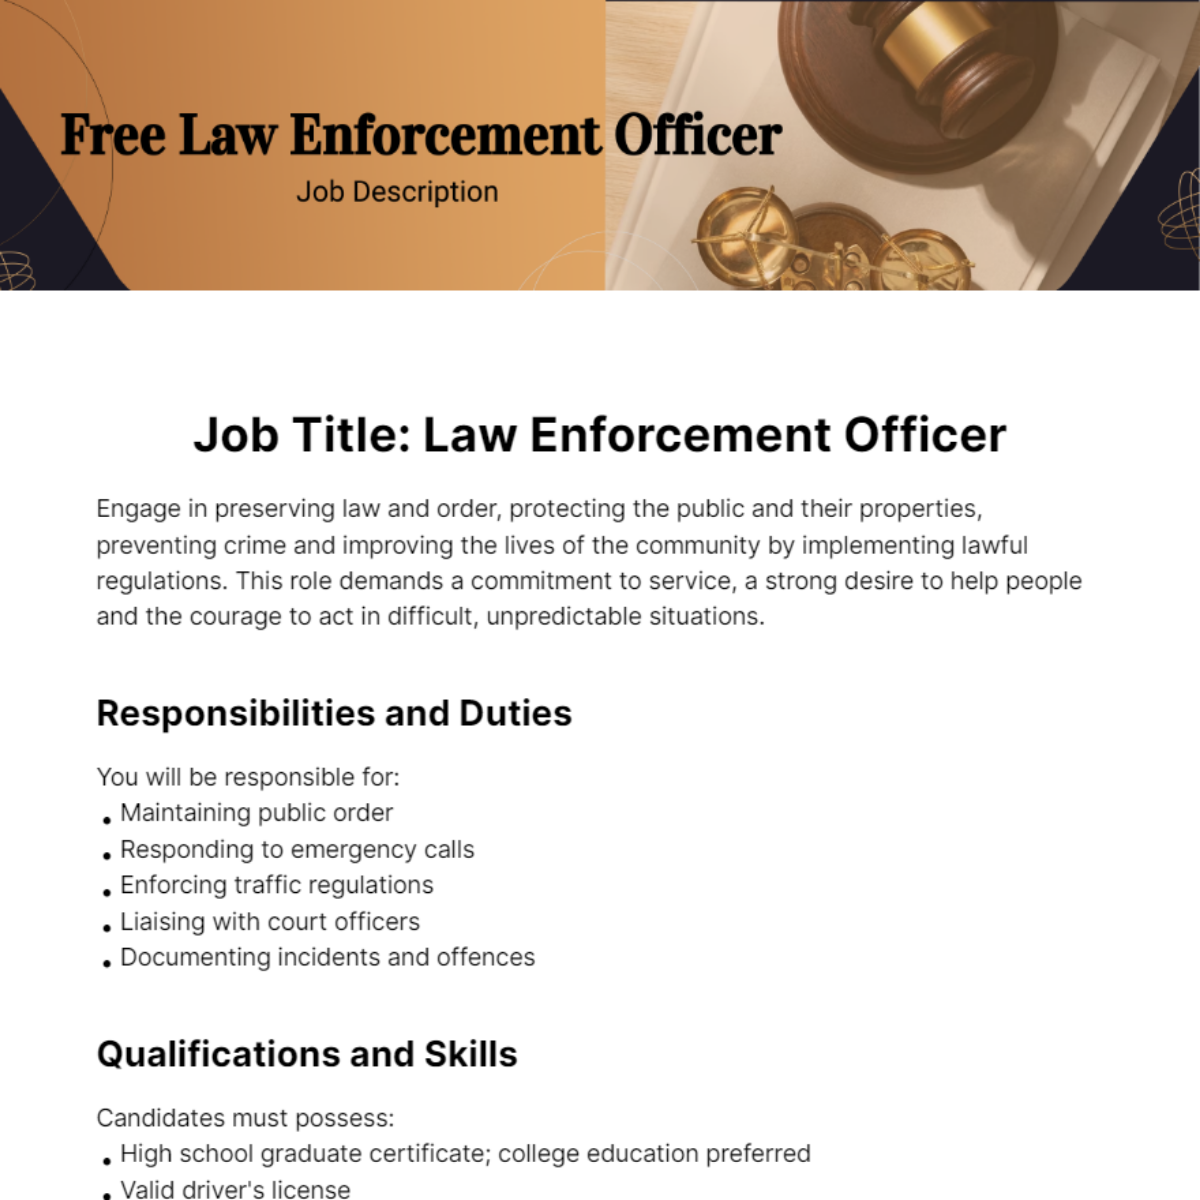 Free Law Enforcement Officer Job Description Template